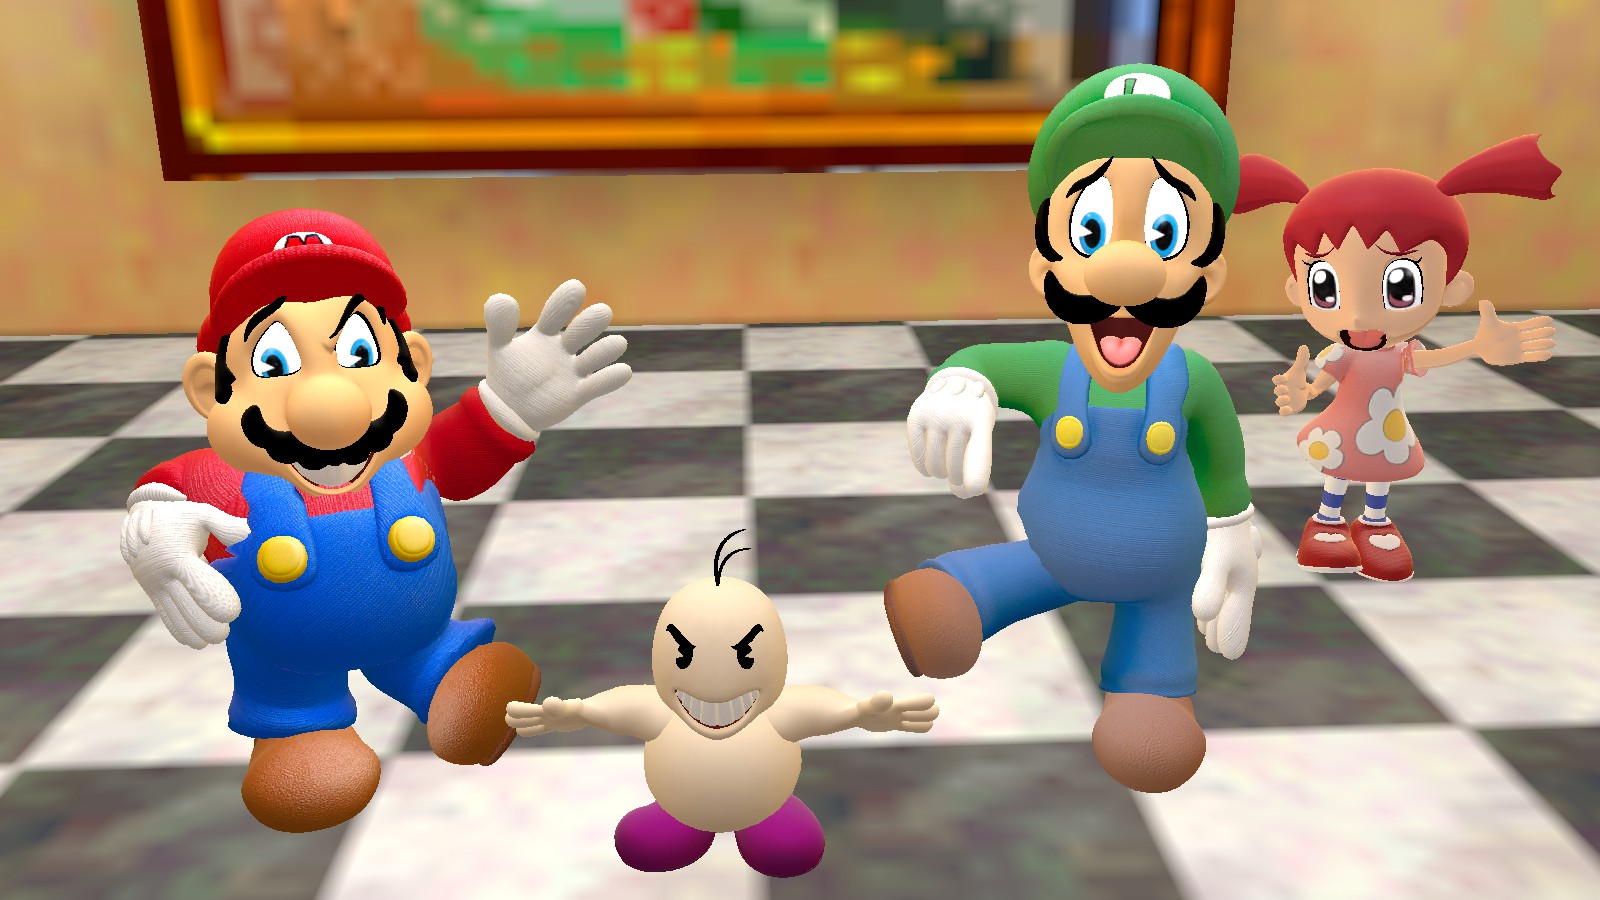 Les personnages de Mario, Luigi et Animal Crossing dans une création Garry's Mod.